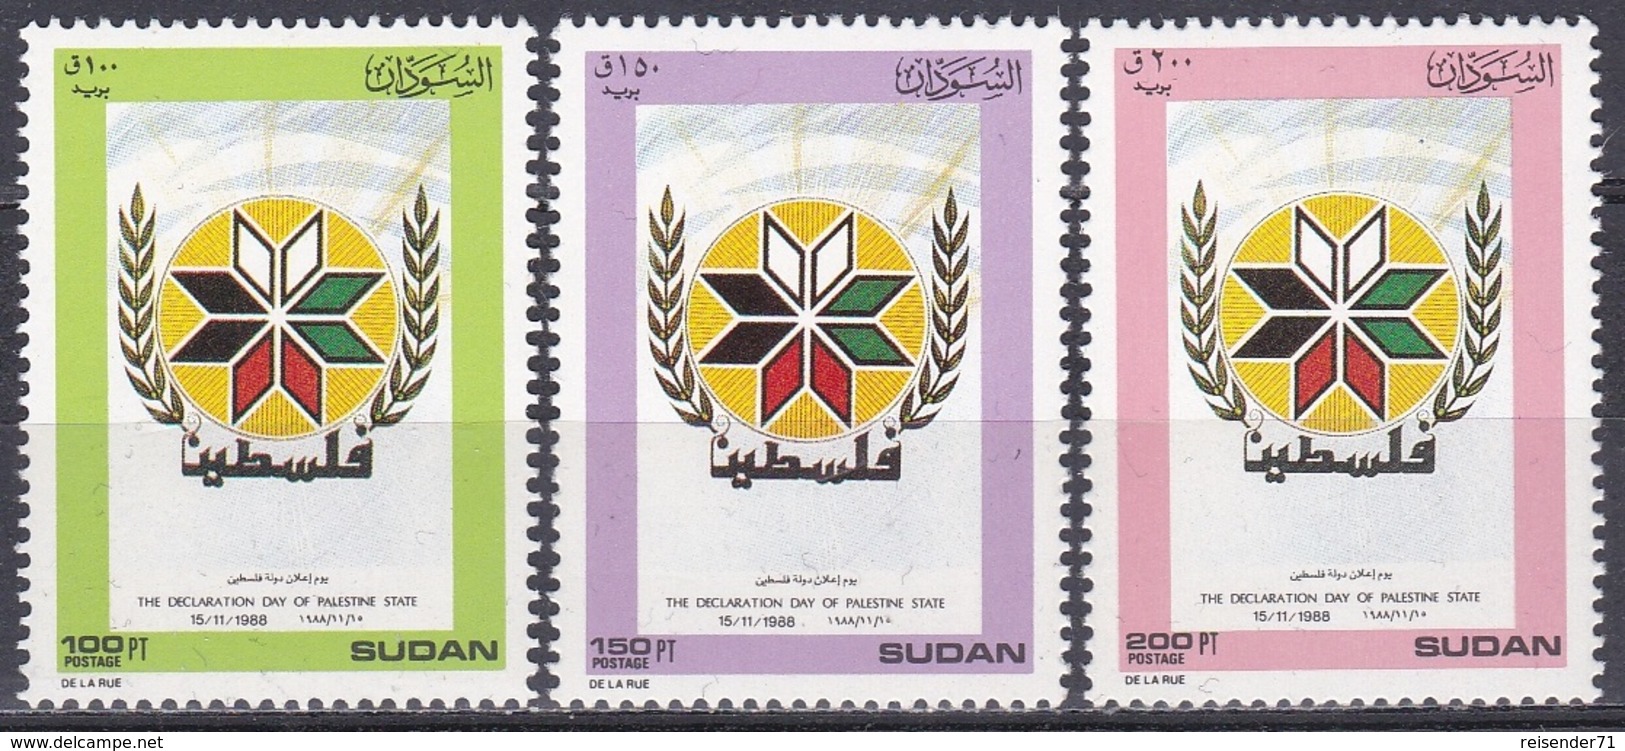 Sudan Soudan 1989 Geschichte History Aufstand Rebellion Palästina Palestine Wappen Arms Naher Osten, Mi. 404-6 ** - Soedan (1954-...)